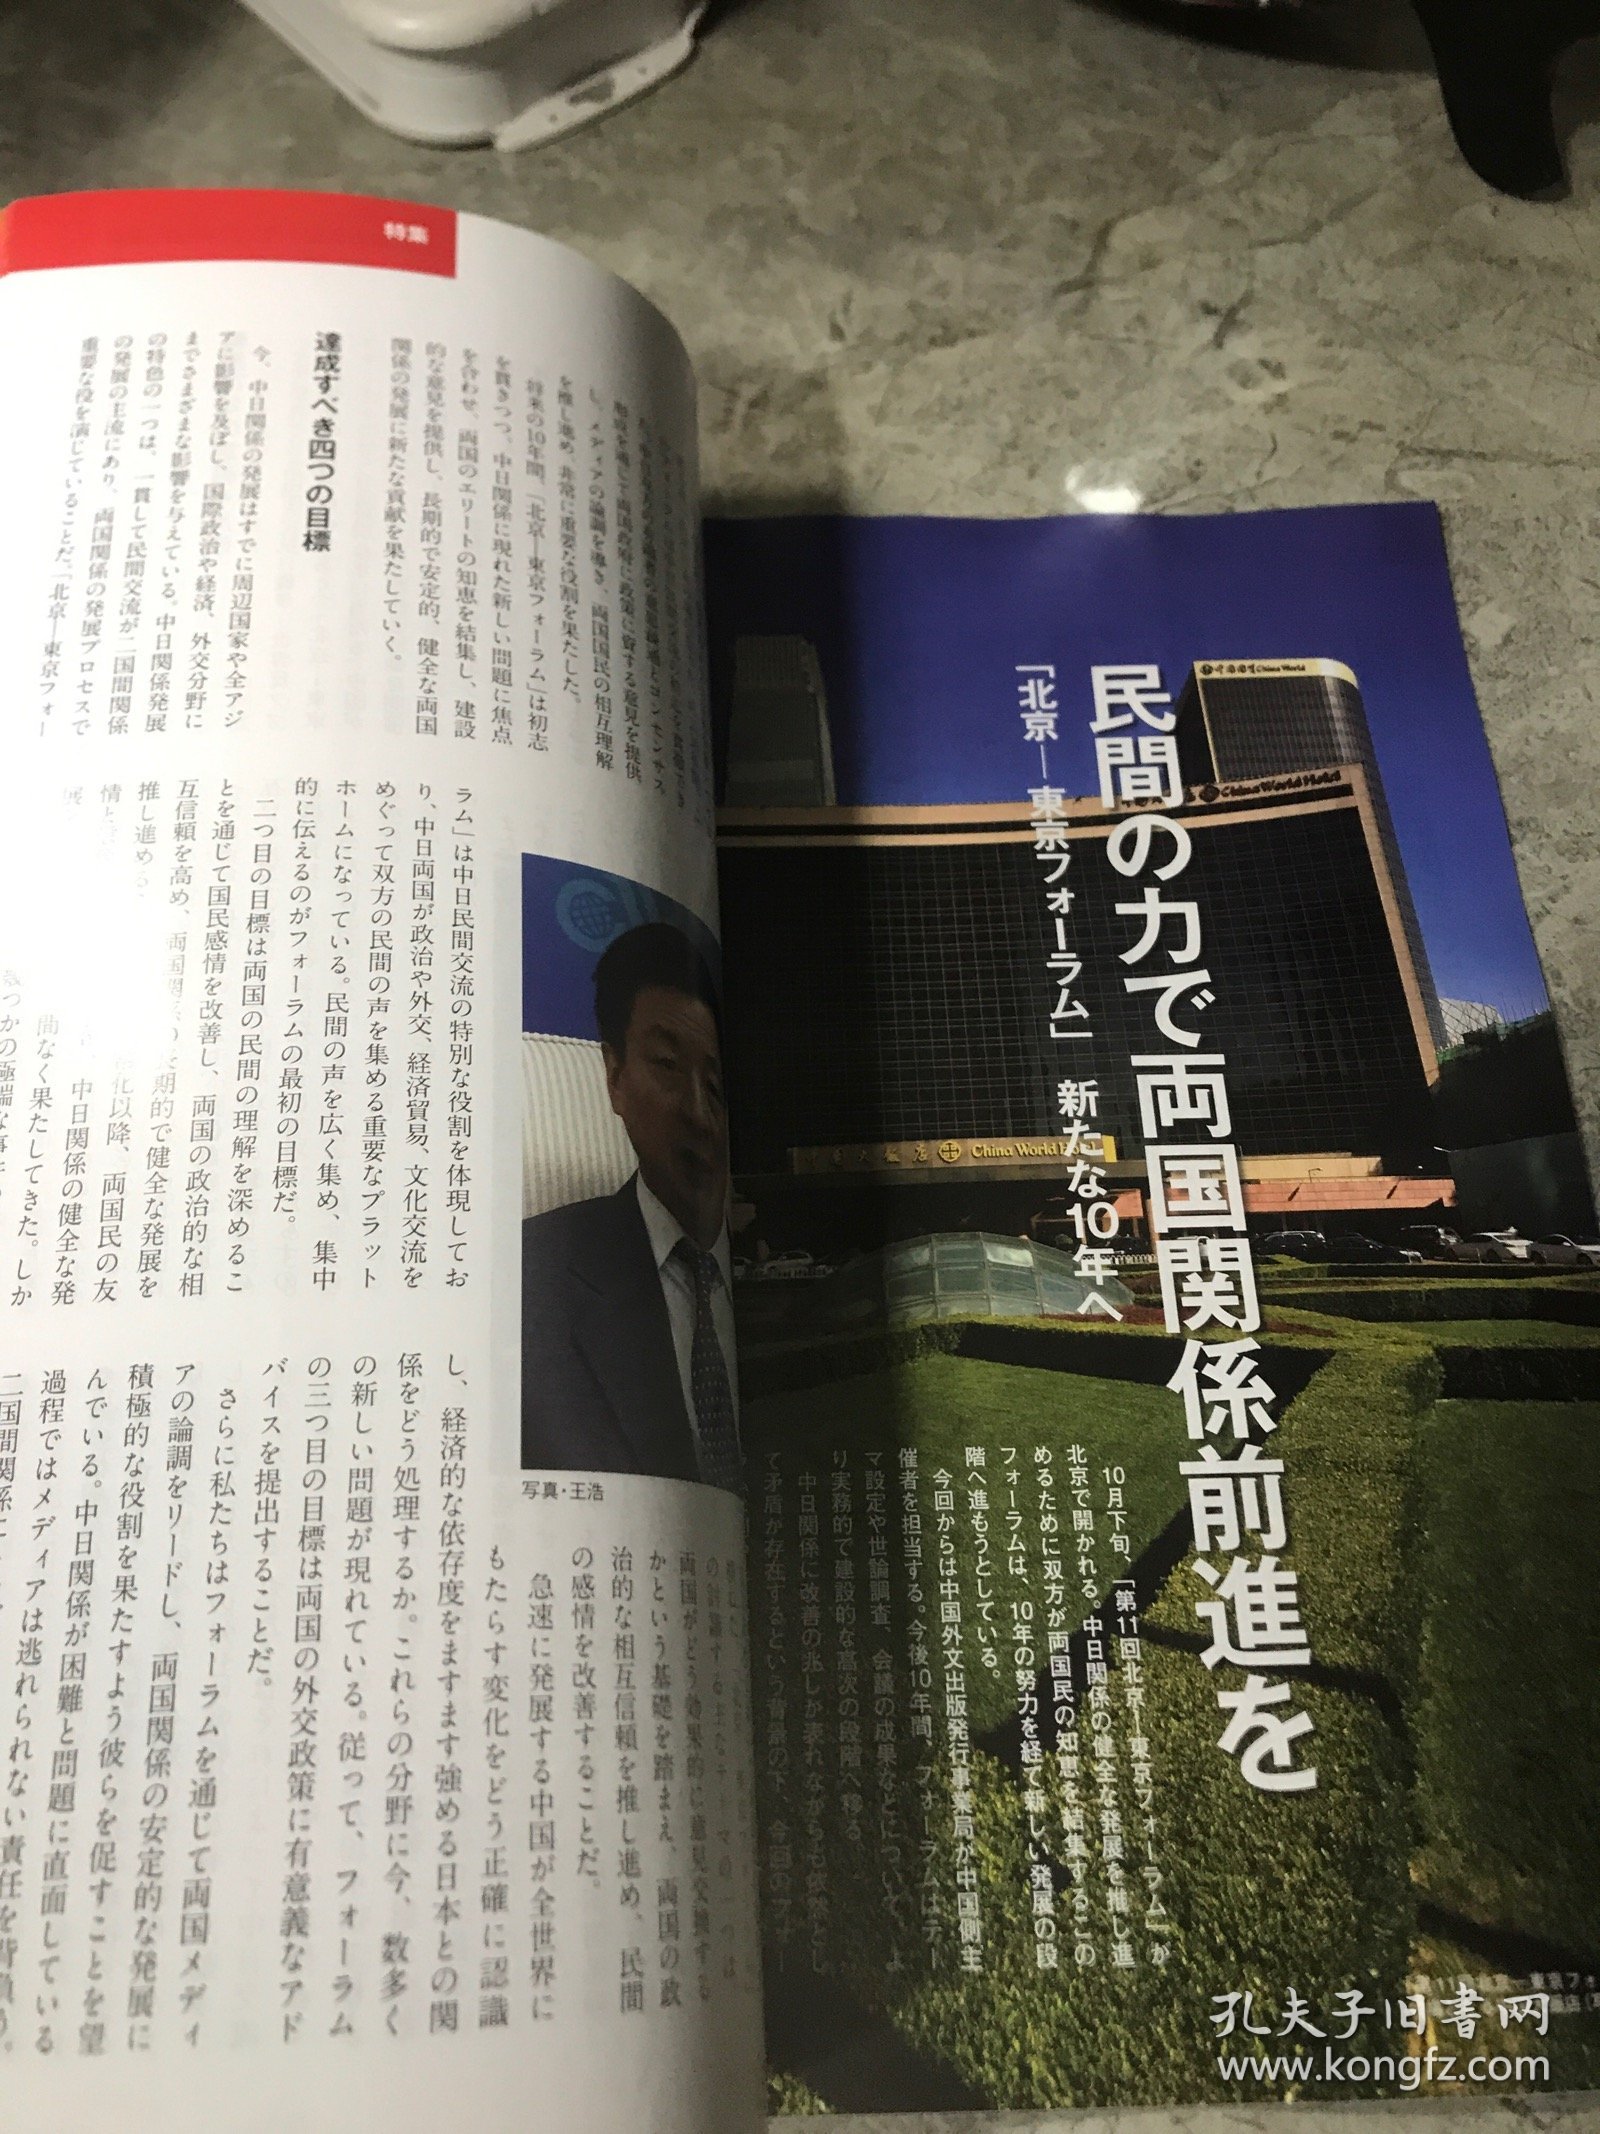 人民中国 2015年 10日文杂志